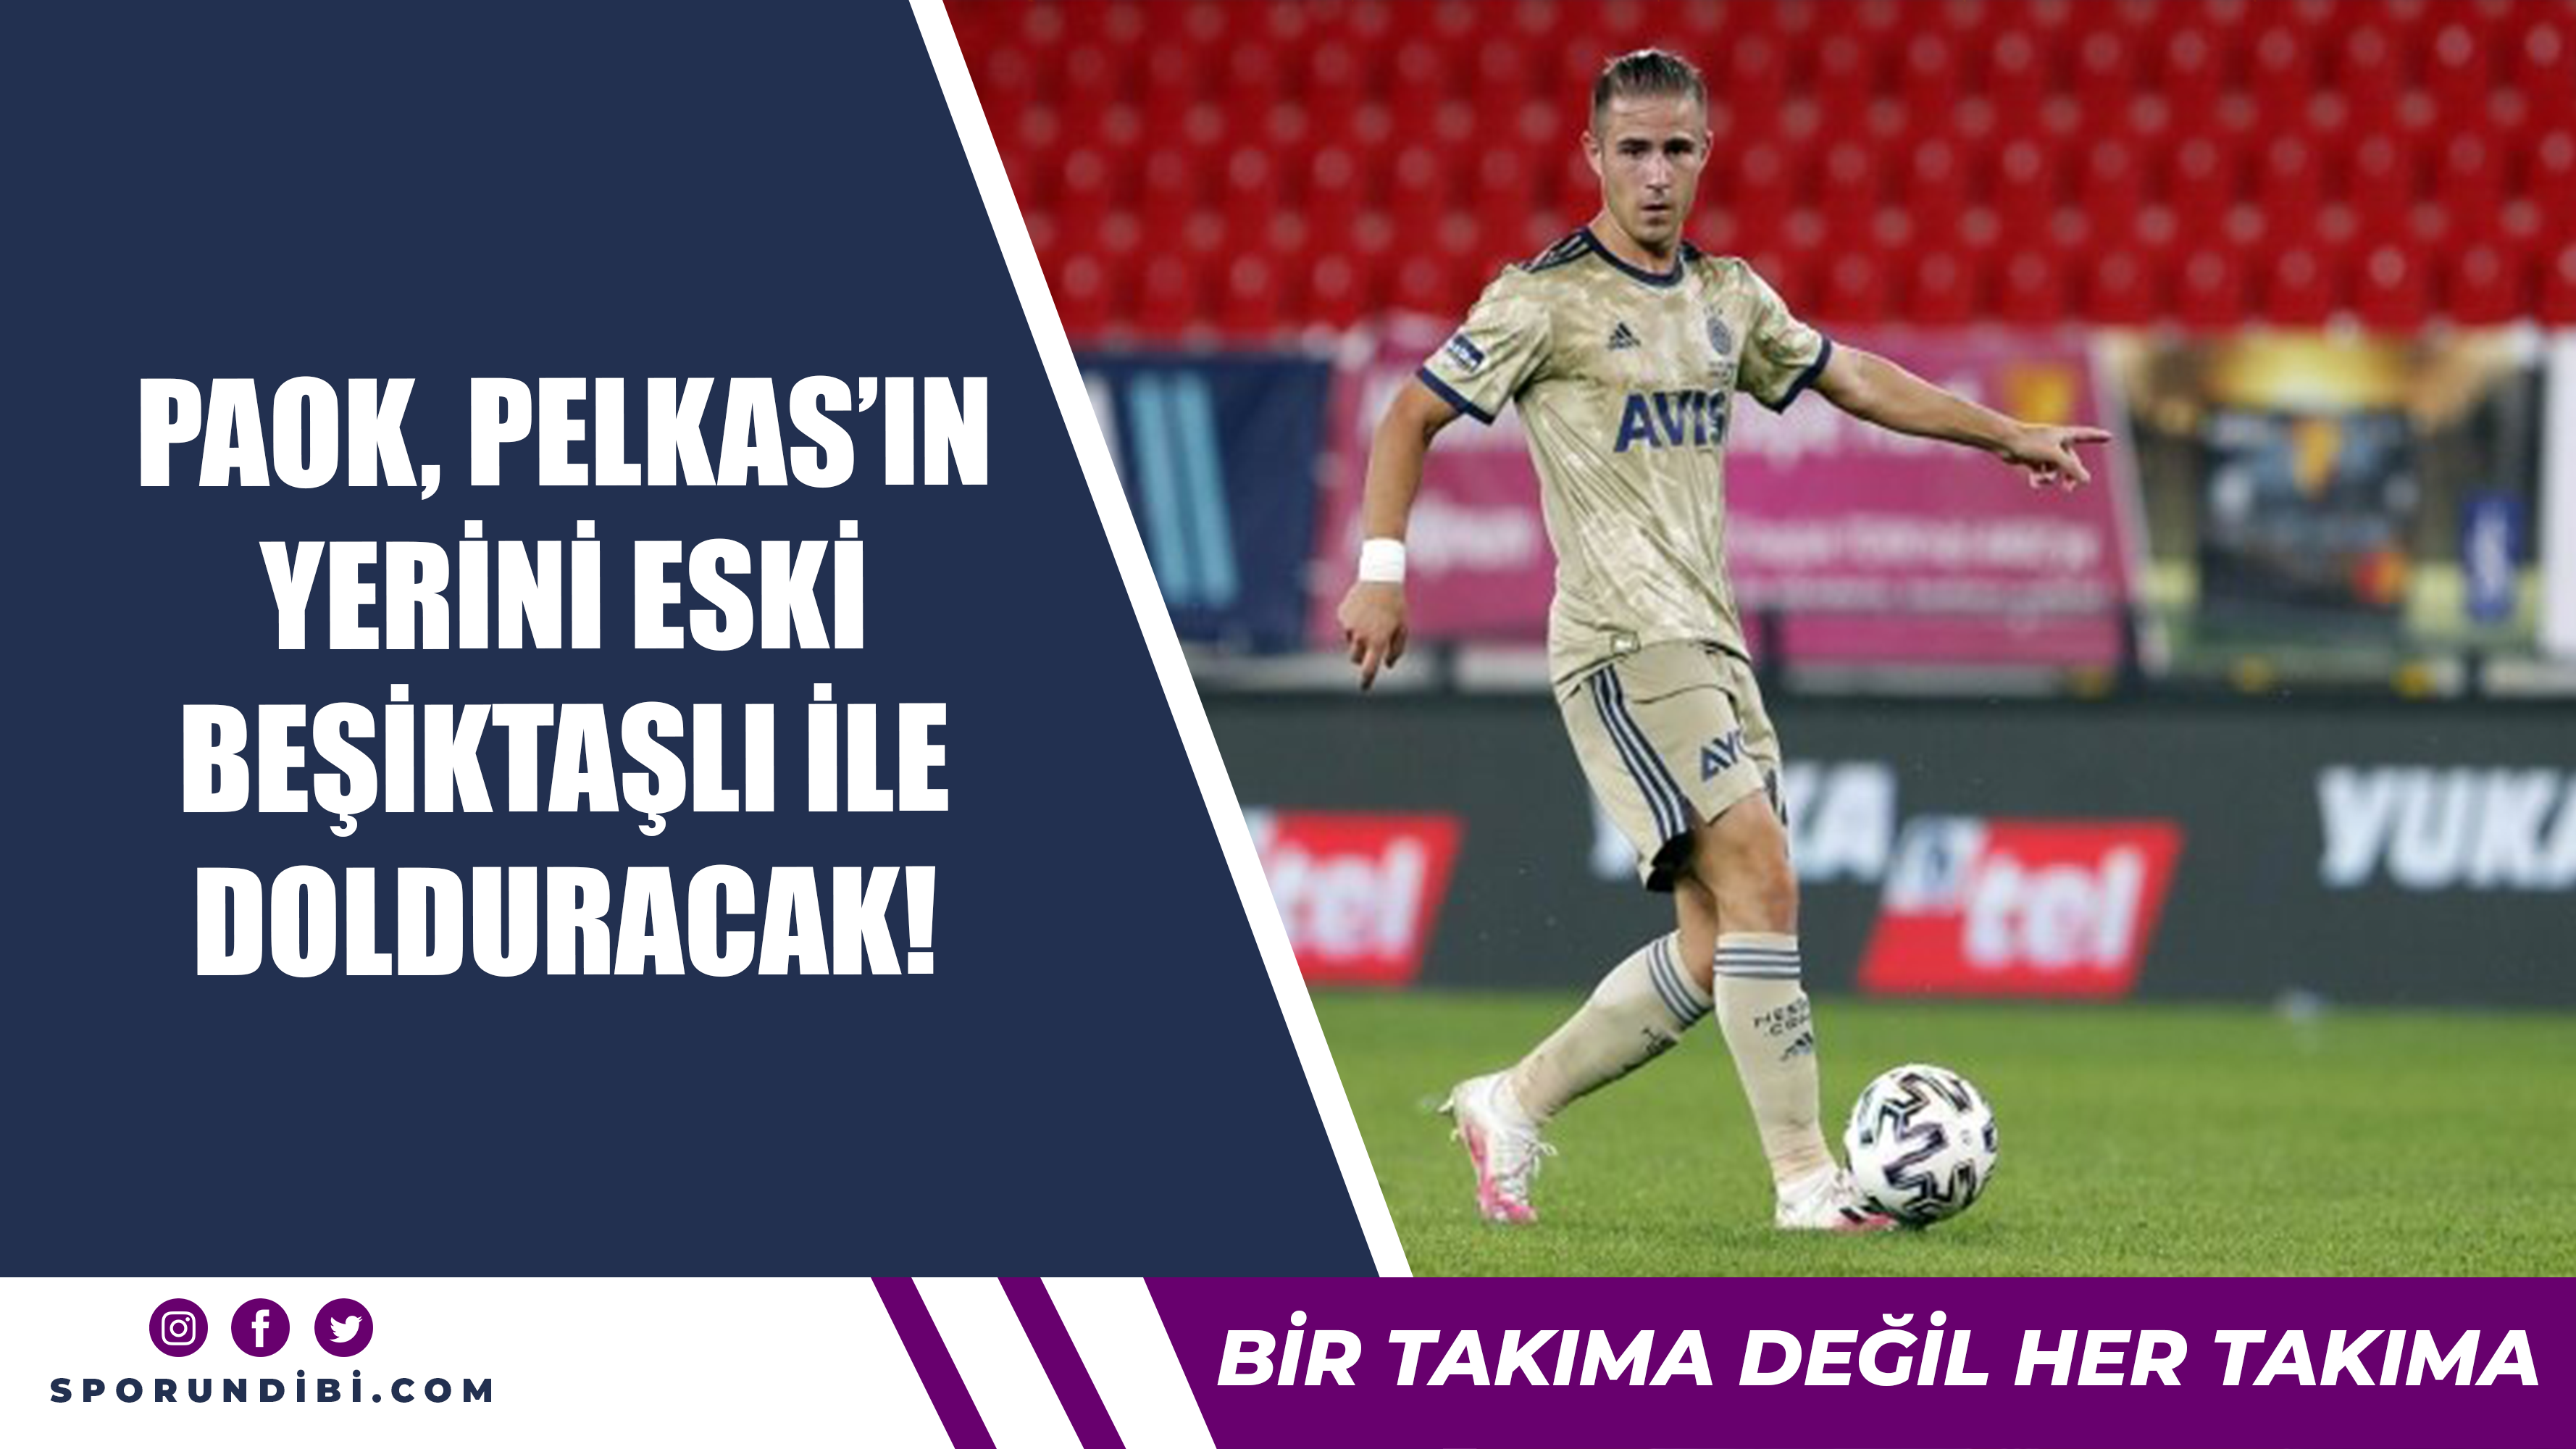 PAOK, Pelkas'ın yerini eski Beşiktaşlı ile dolduracak!